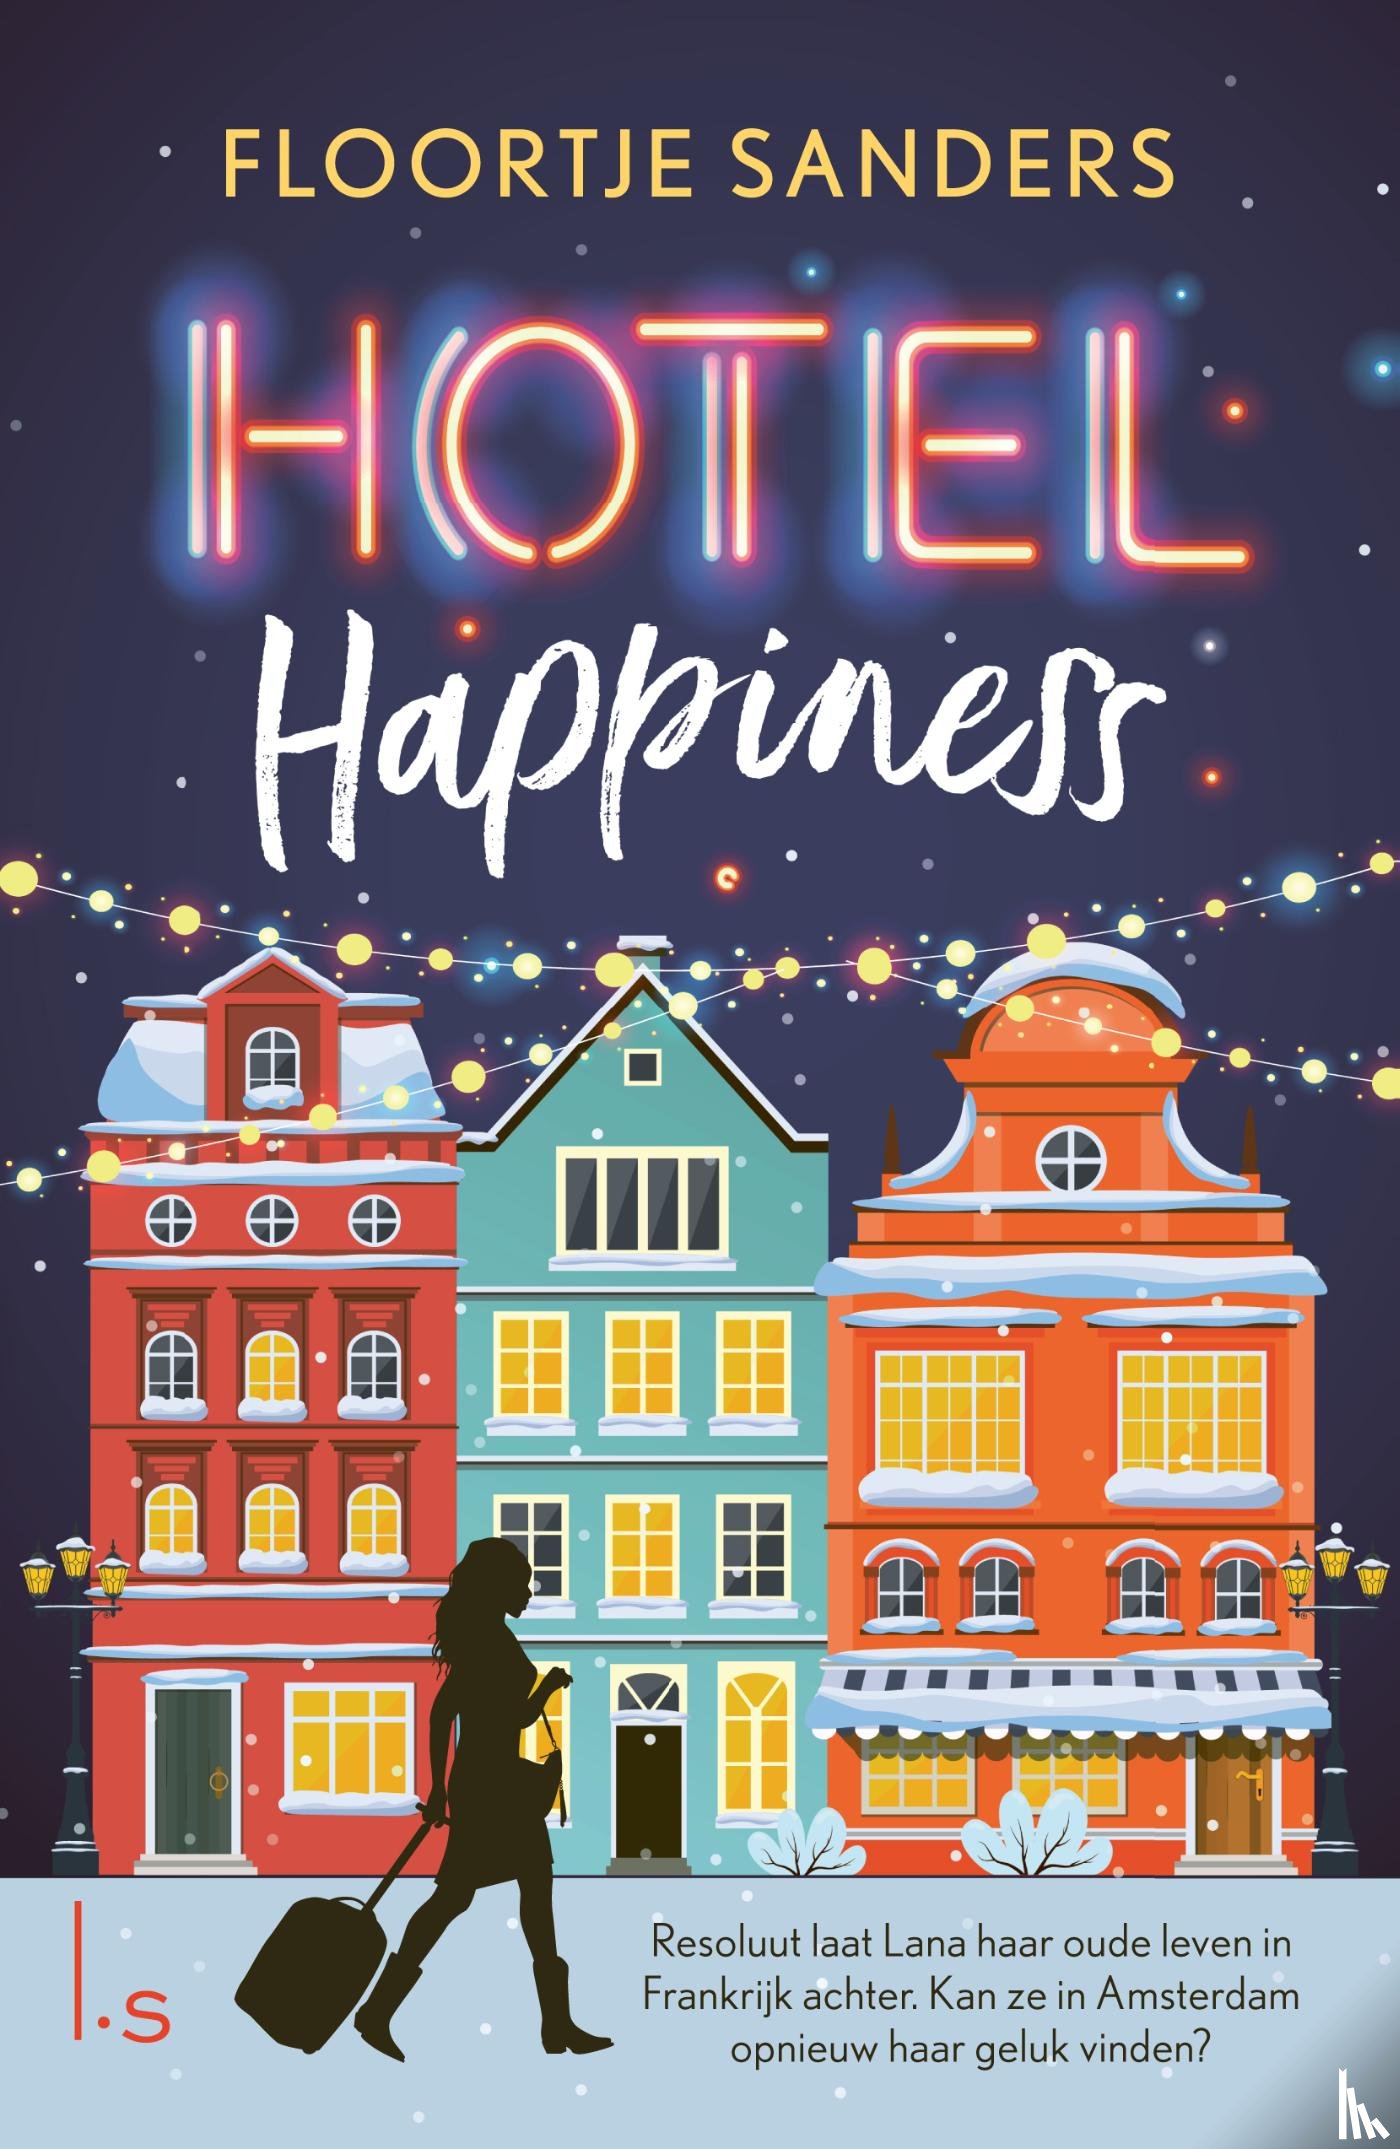 Sanders, Floortje - Hotel Happiness